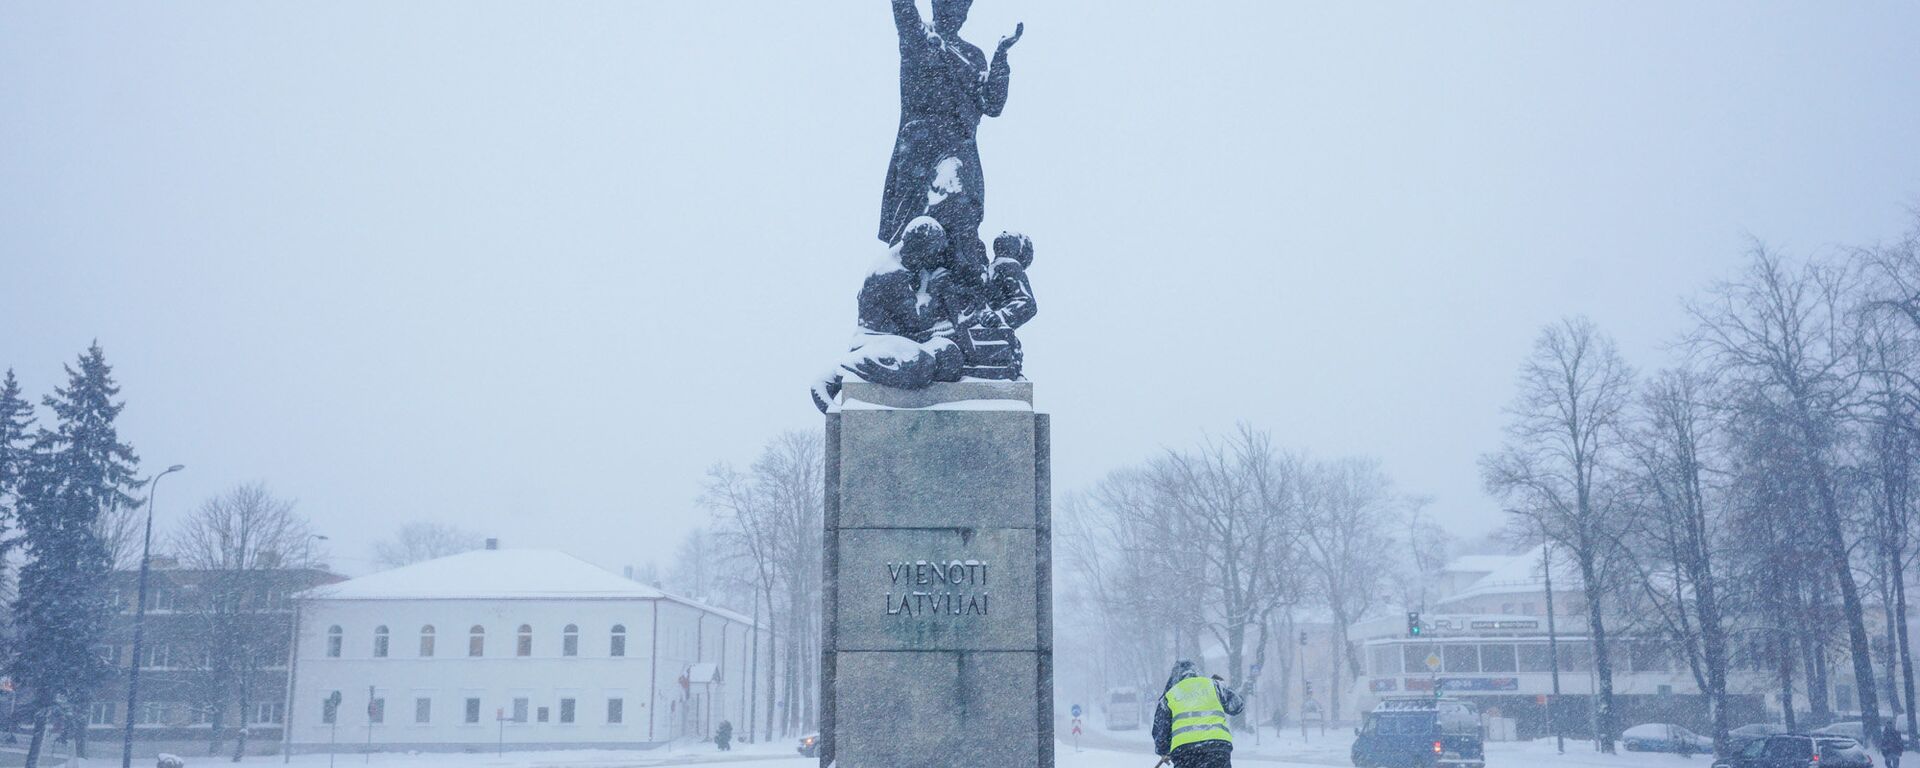 Символ Резекне Латгальская Мара - памятник освобождения Латгалии - Sputnik Латвия, 1920, 04.03.2017